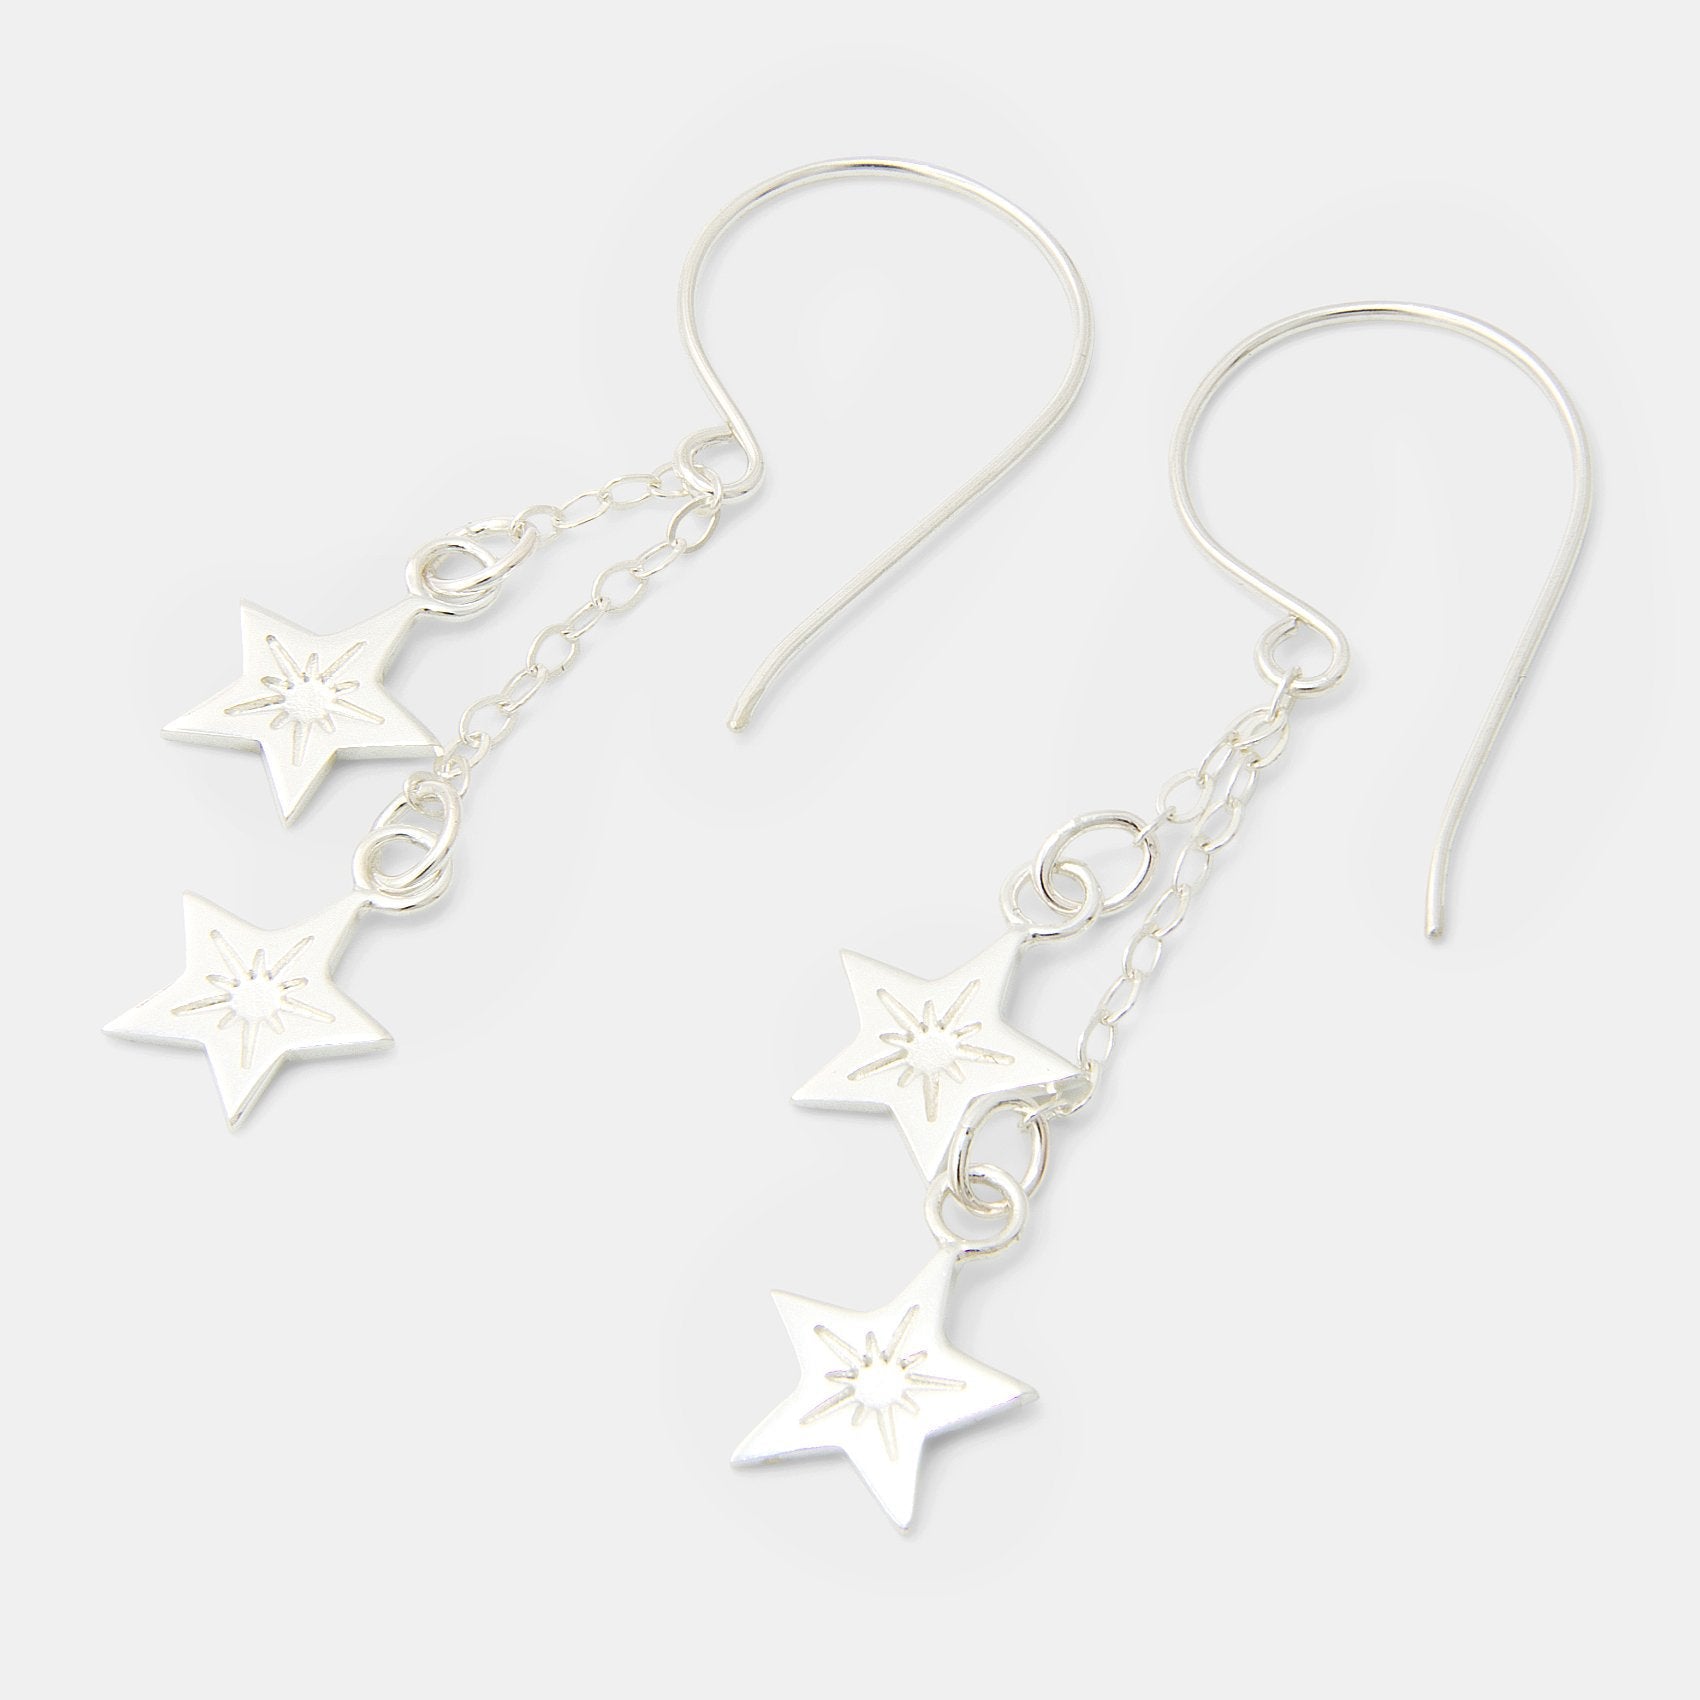 Little stars silver chain dangle earrings - Simone Walsh Jewellery Australia